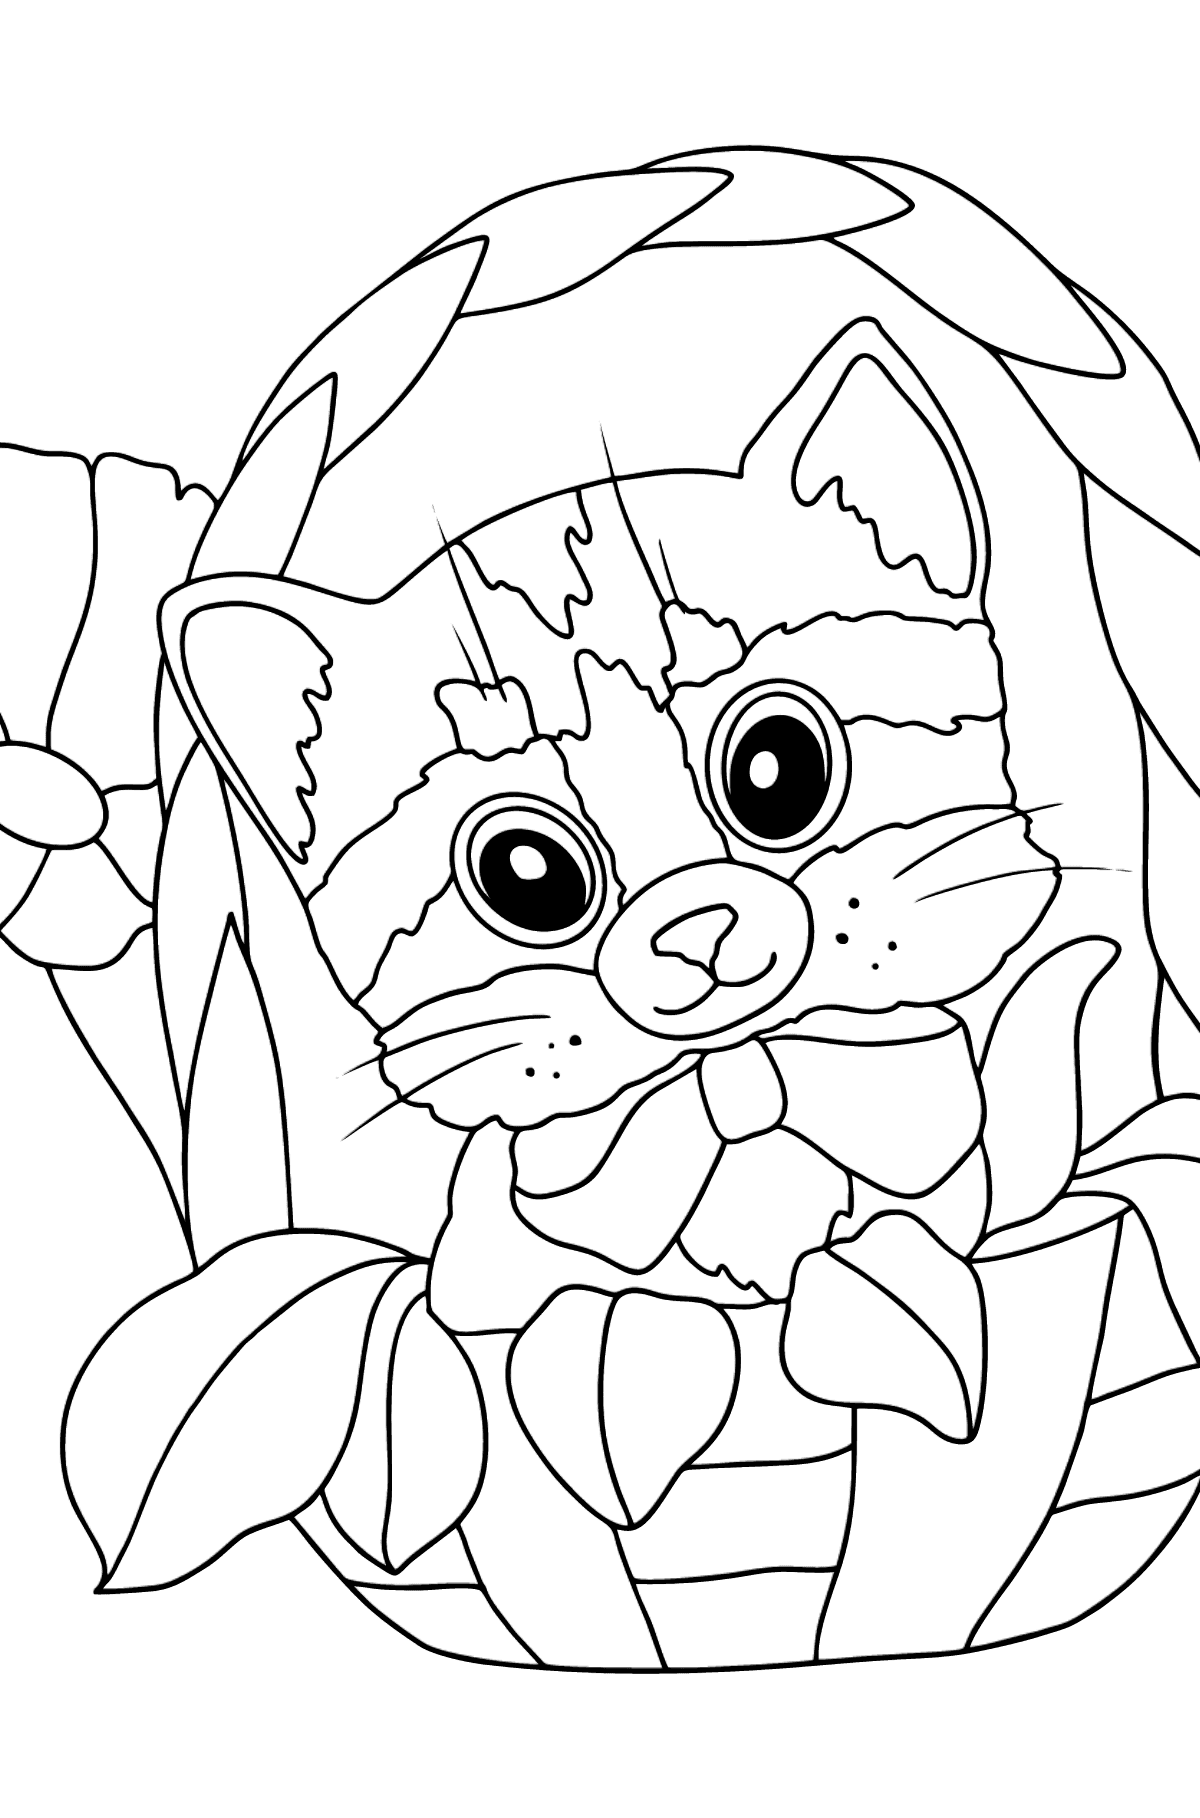 Desen de colorat pisicuță mică - Desene de colorat pentru copii